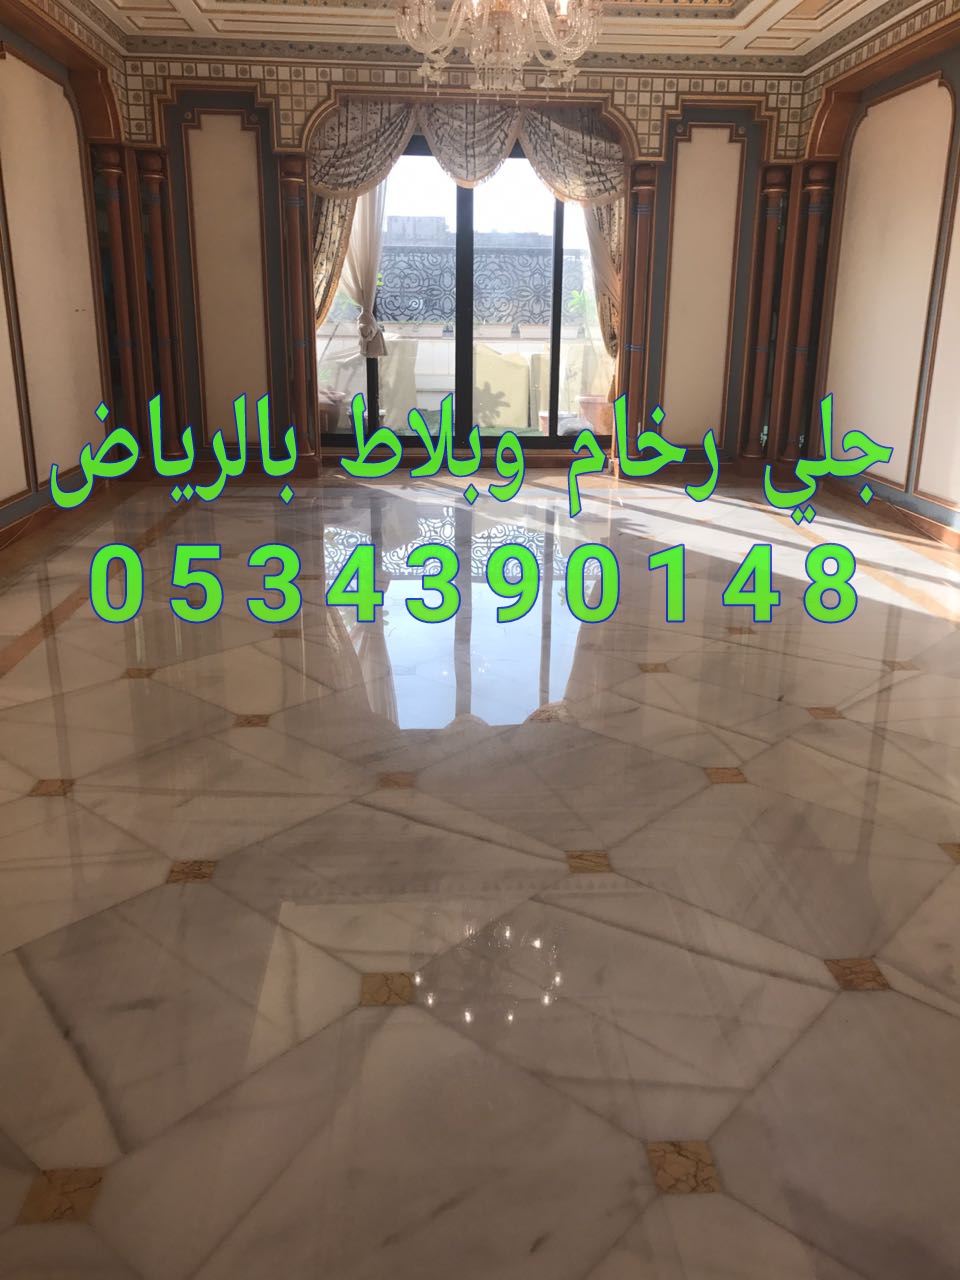 جلي رخام في الرياض من شركة الجوهرة 0534390148 اسعار ممتازة لجلي الرخام في الرياض P_11486wjlw0